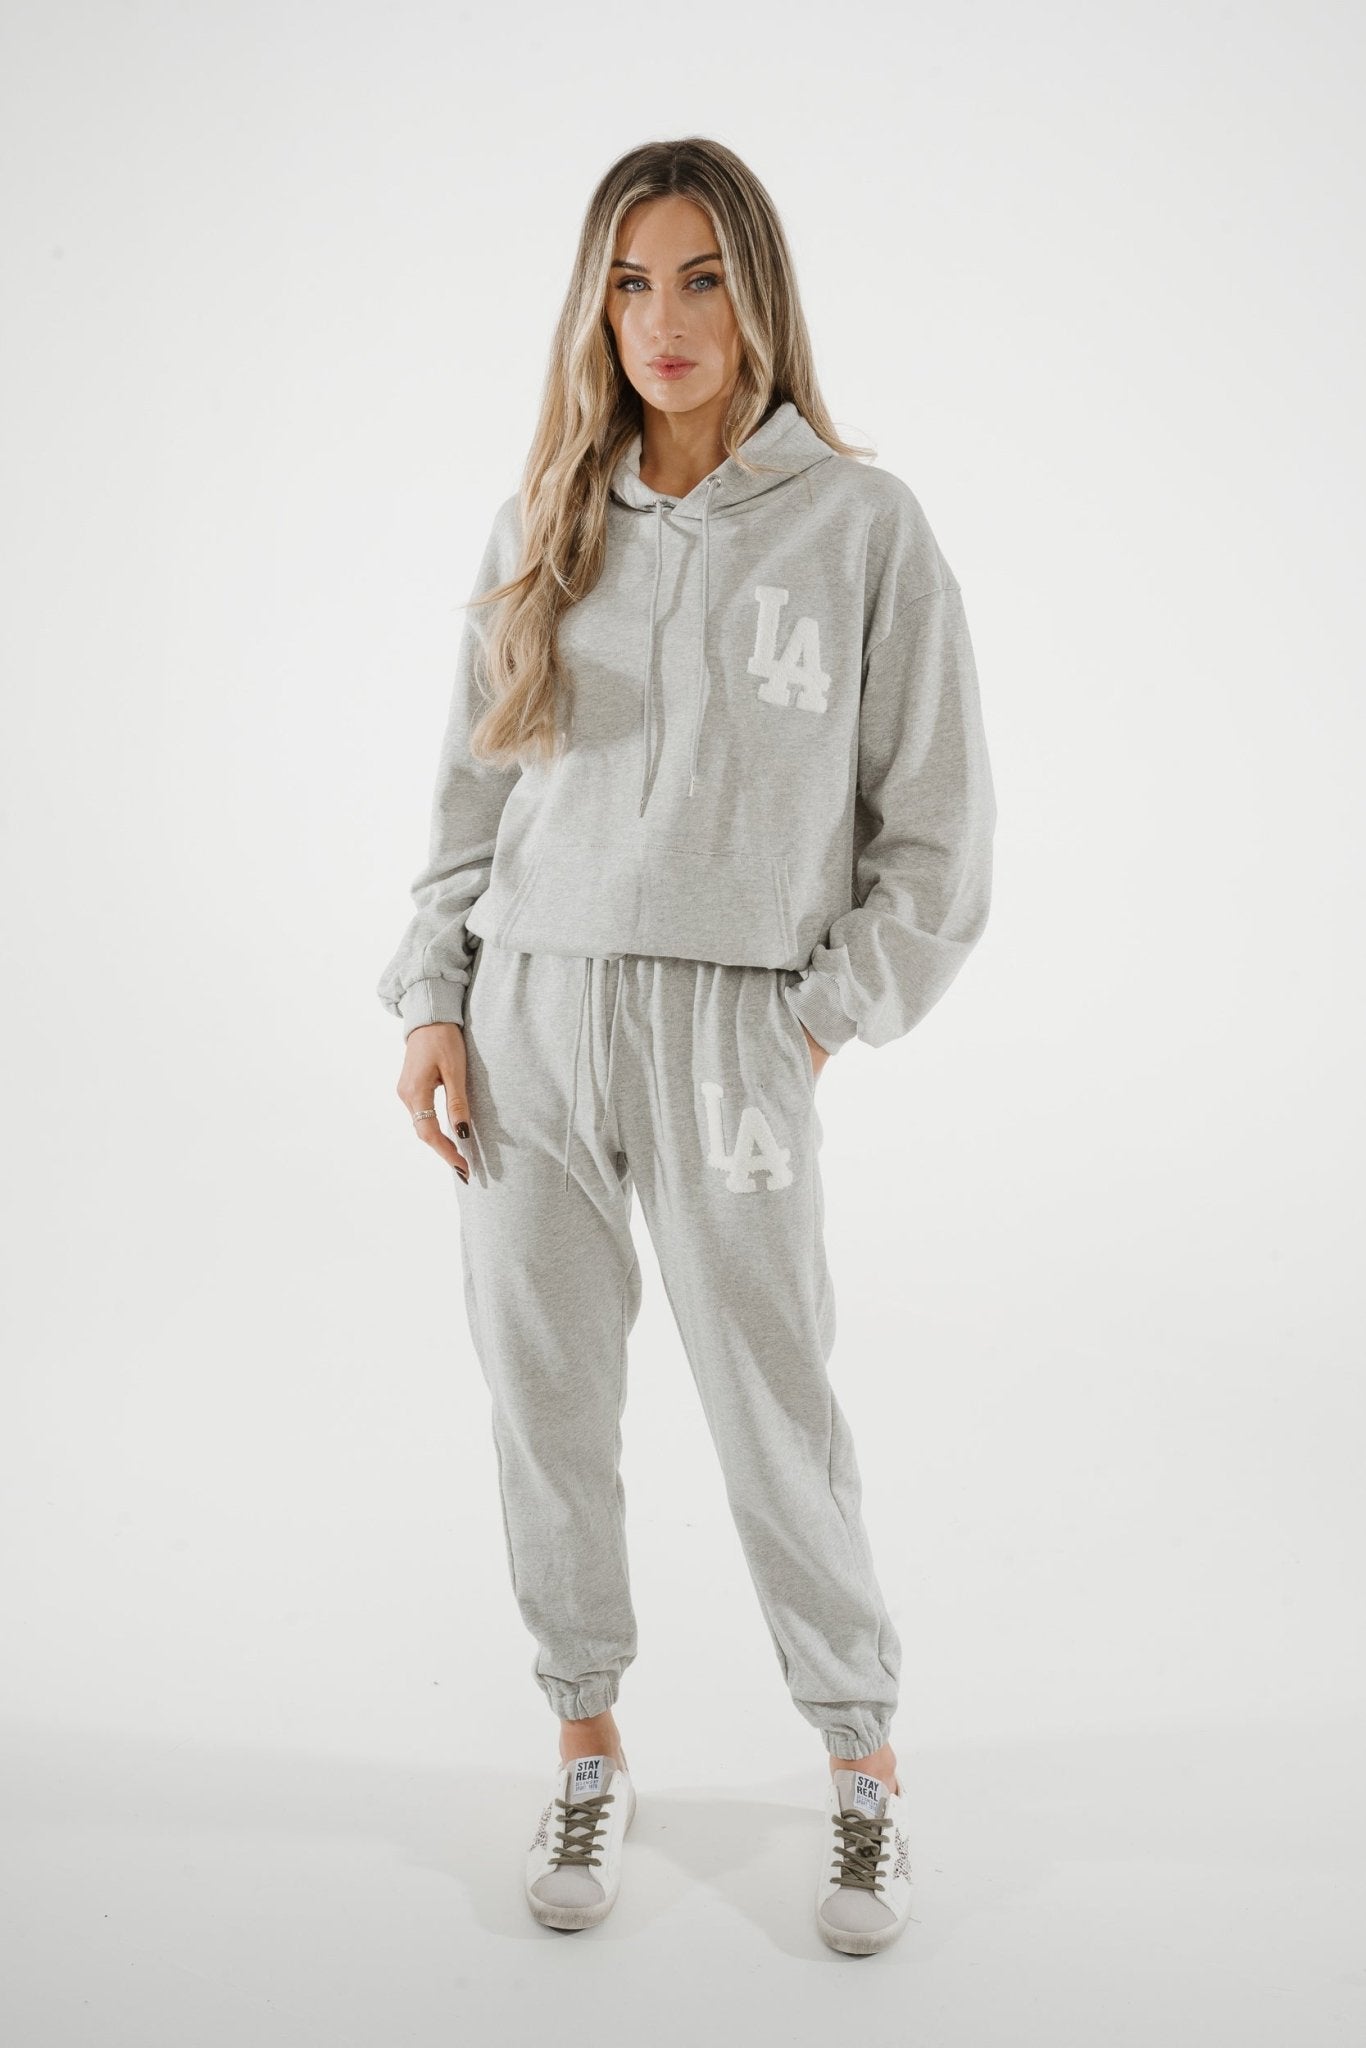 Millie Slogan Hoodie In Grey - The Walk in Wardrobe